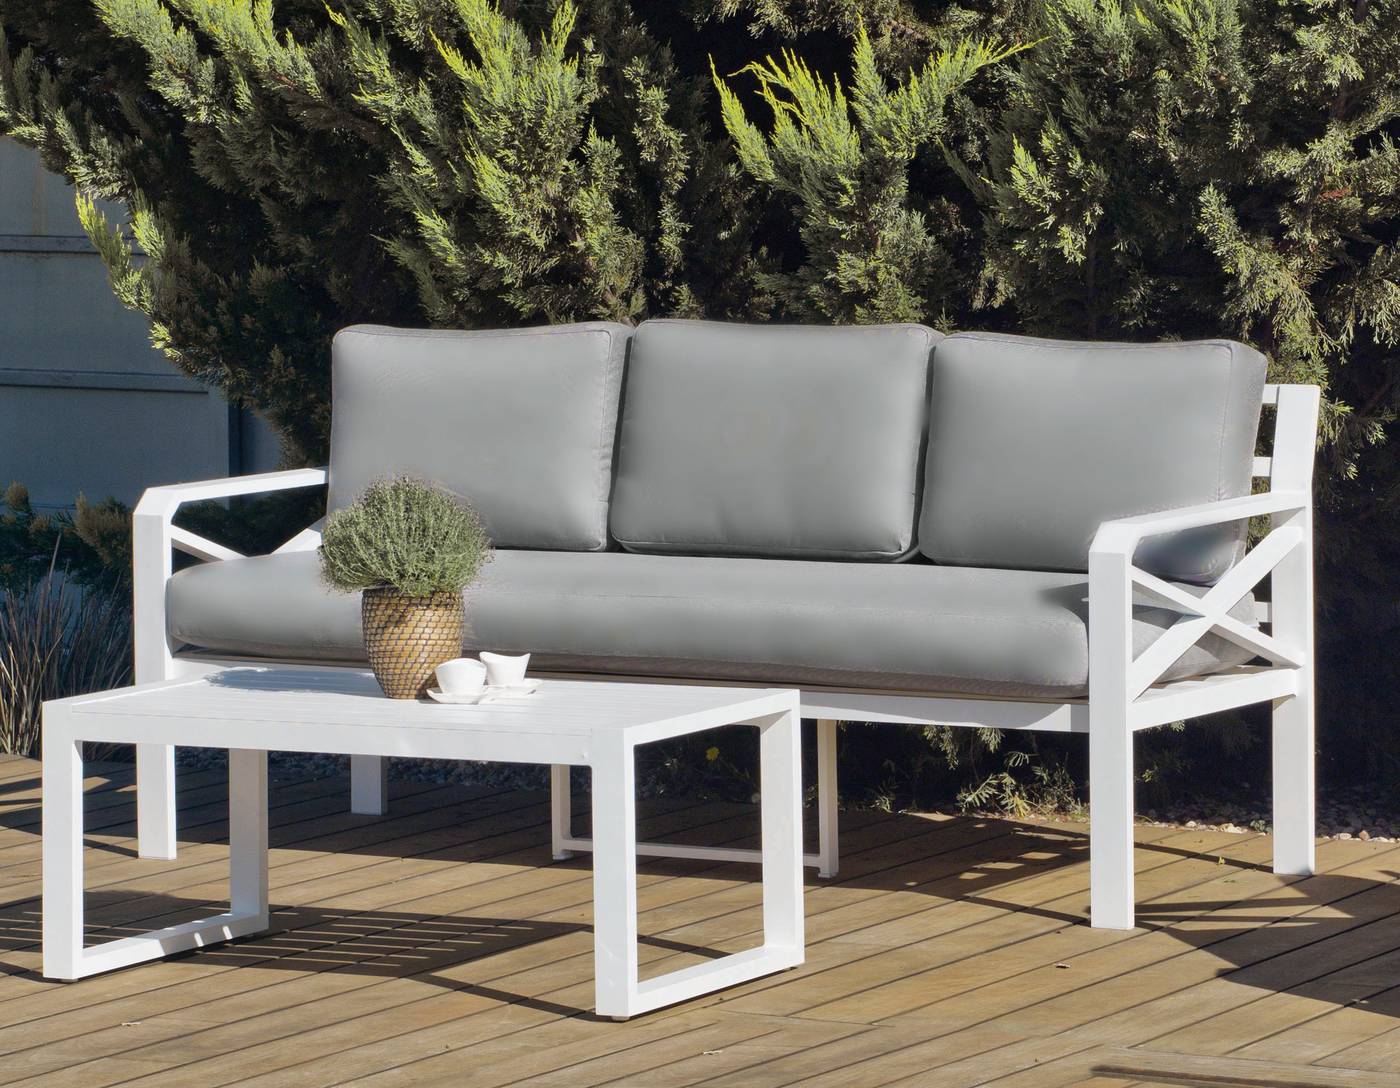 Sofá 3 plazas con cojines confort desenfundables. Estructura aluminio color blanco y antracita.